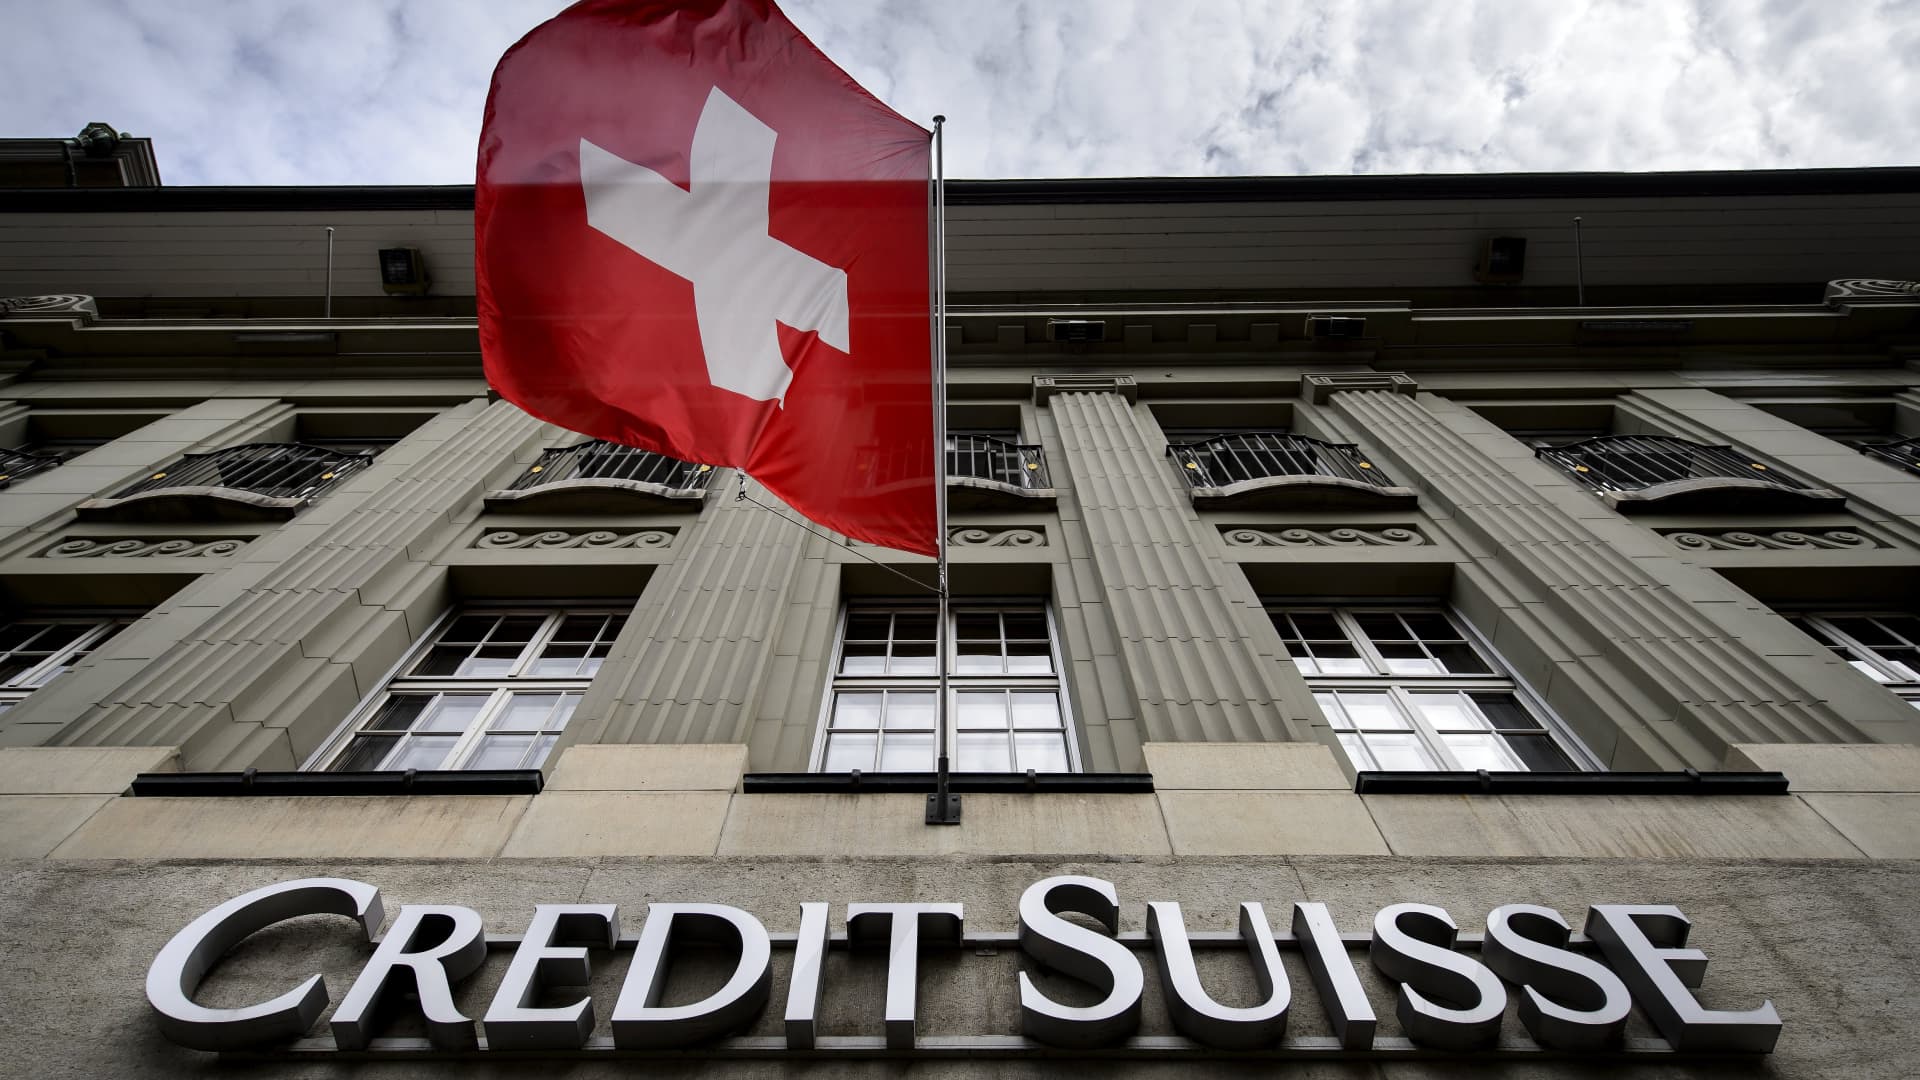 Credit Suisse seeks to reassure investors amid financial worries: FT